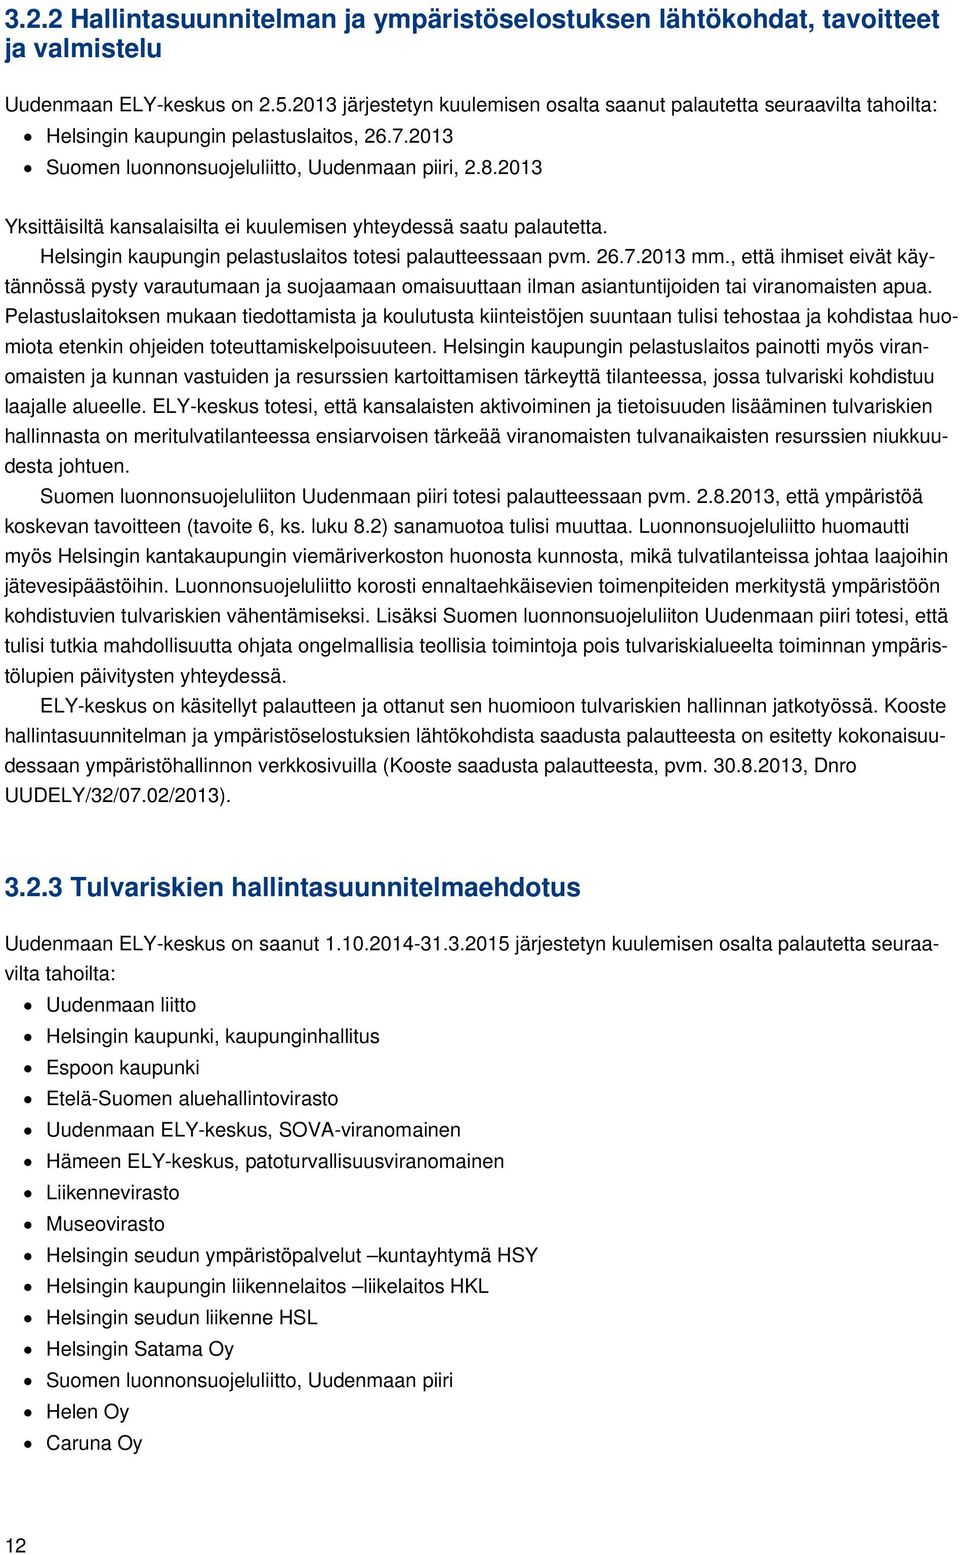 2013 Yksittäisiltä kansalaisilta ei kuulemisen yhteydessä saatu palautetta. Helsingin kaupungin pelastuslaitos totesi palautteessaan pvm. 26.7.2013 mm.